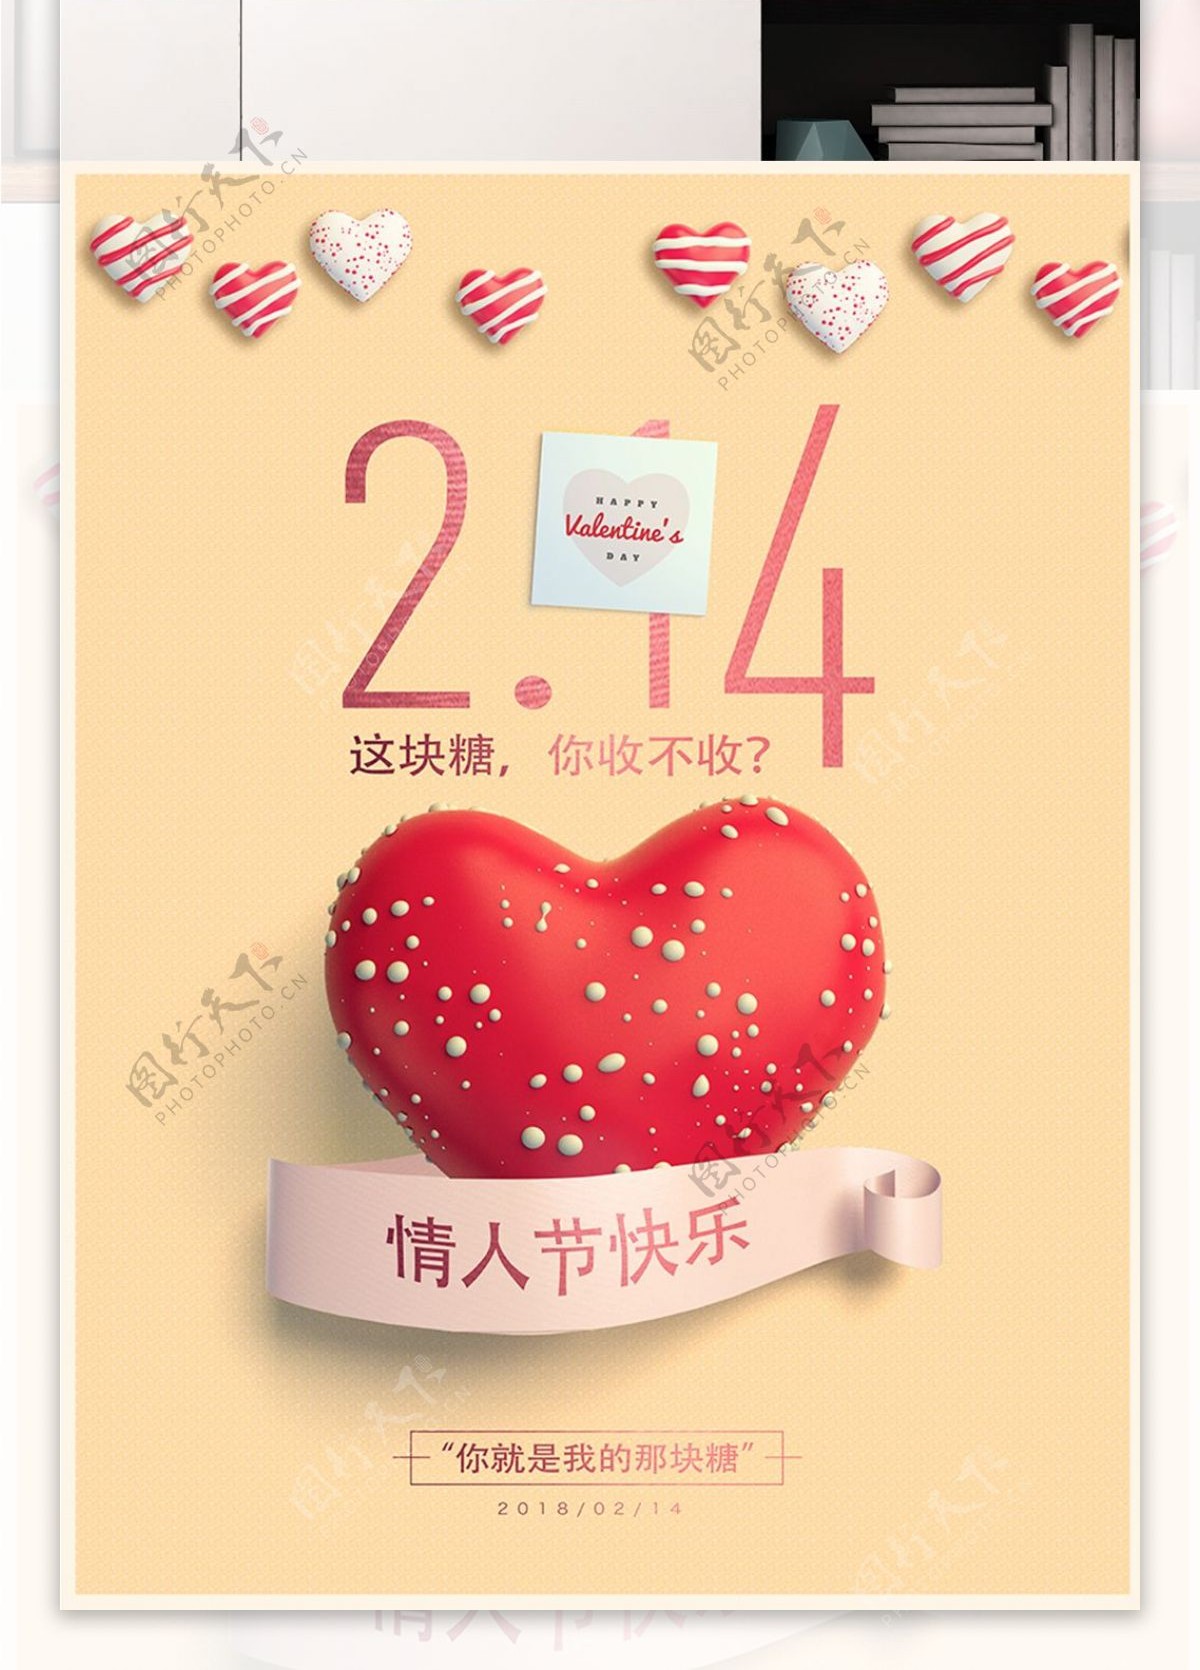 2018年2月14日简约爱心情人节节日海报创意糖果促销